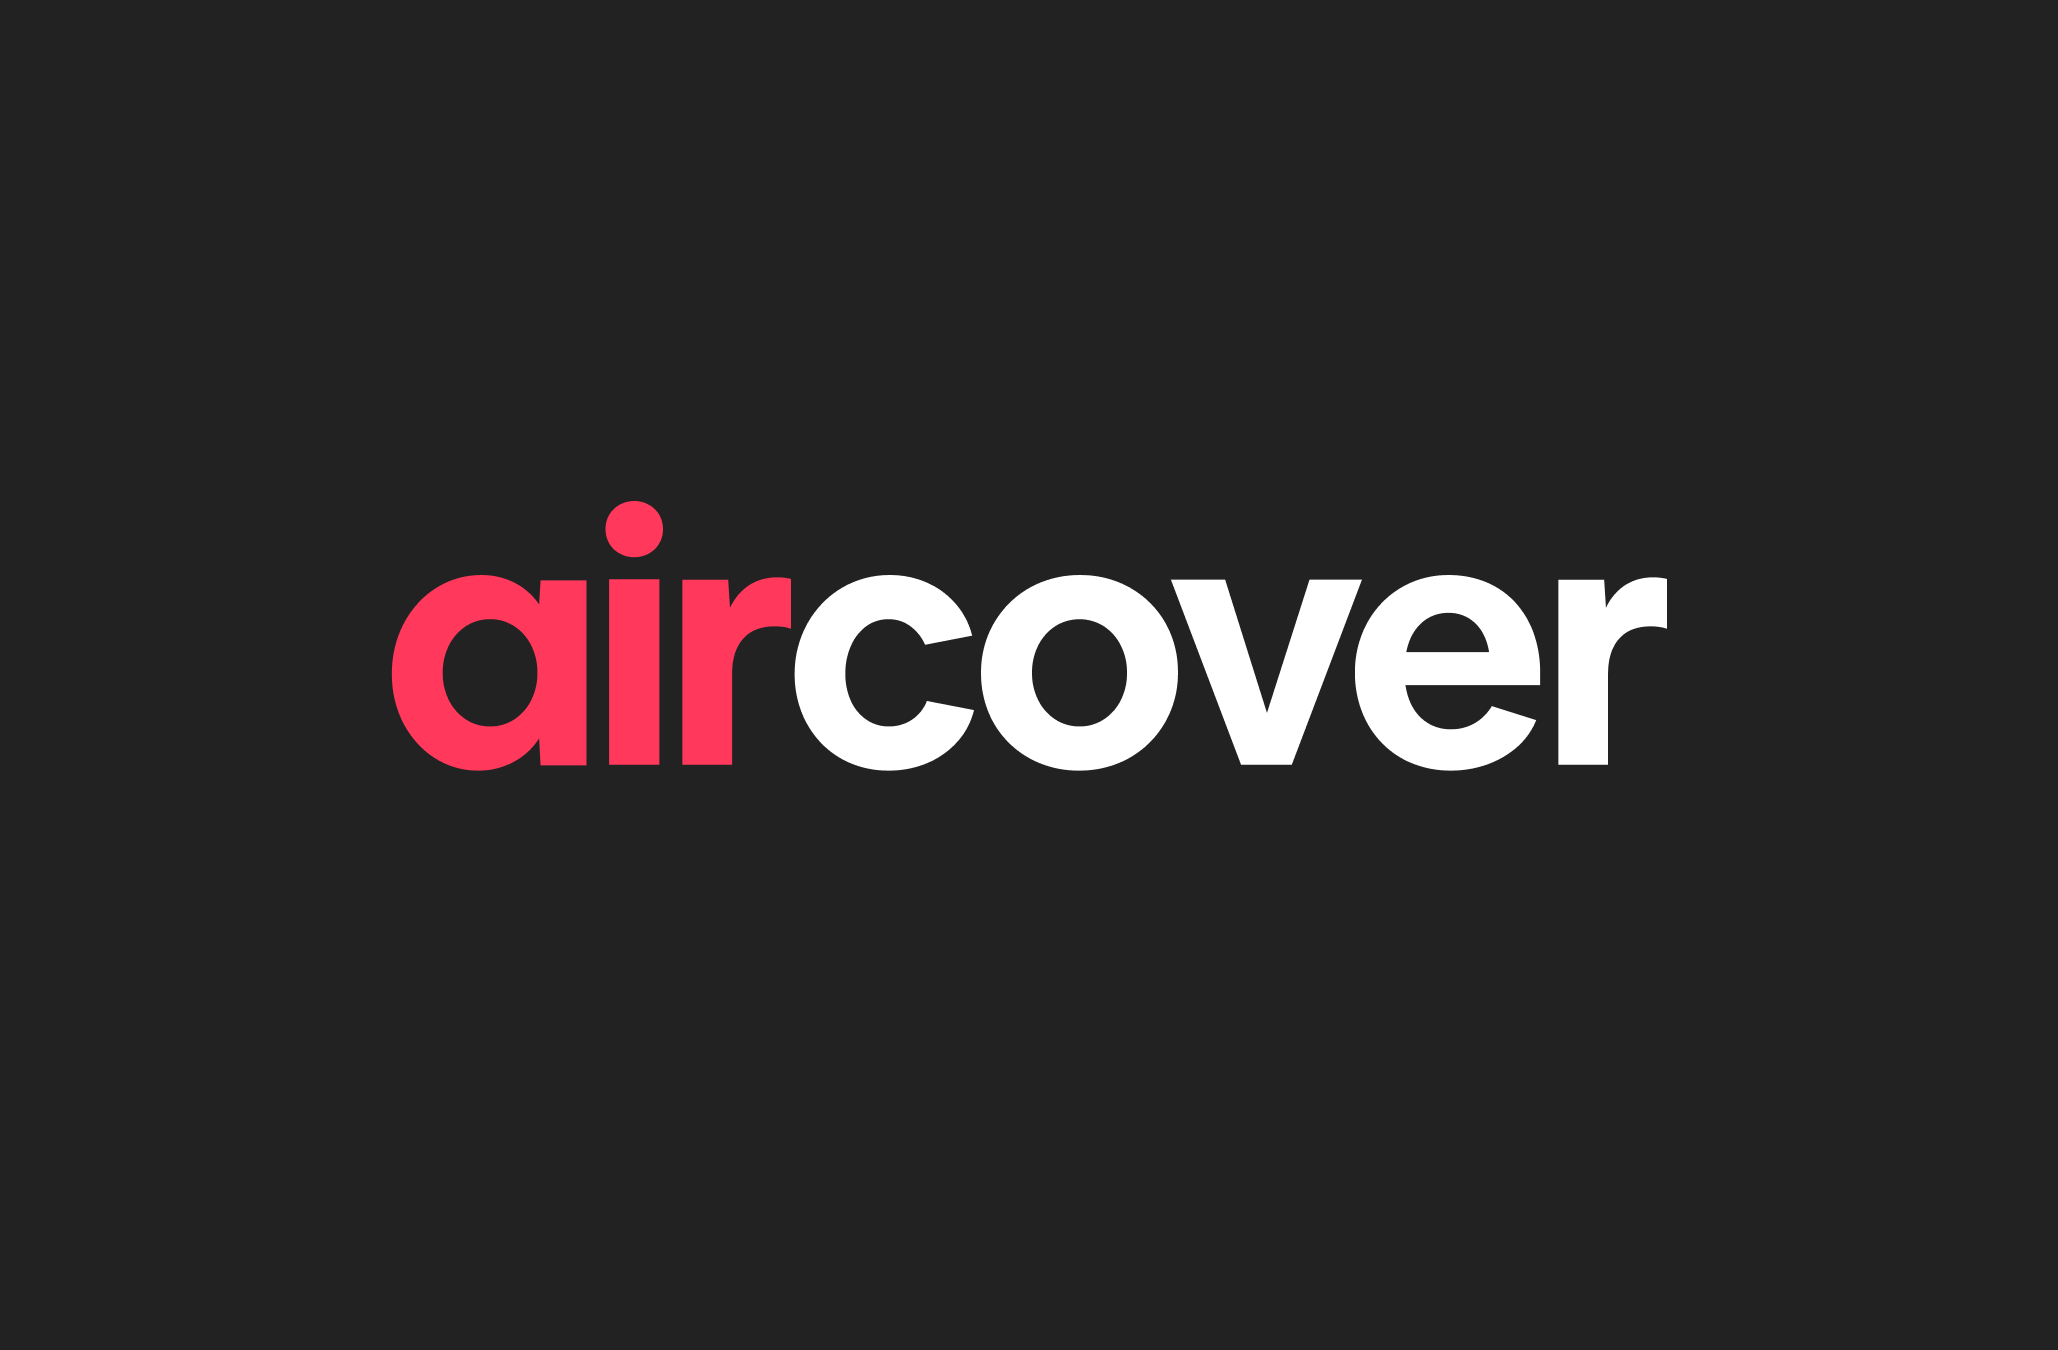 Logotypen för AirCover, med röda och vita bokstäver, på en svart bakgrund.